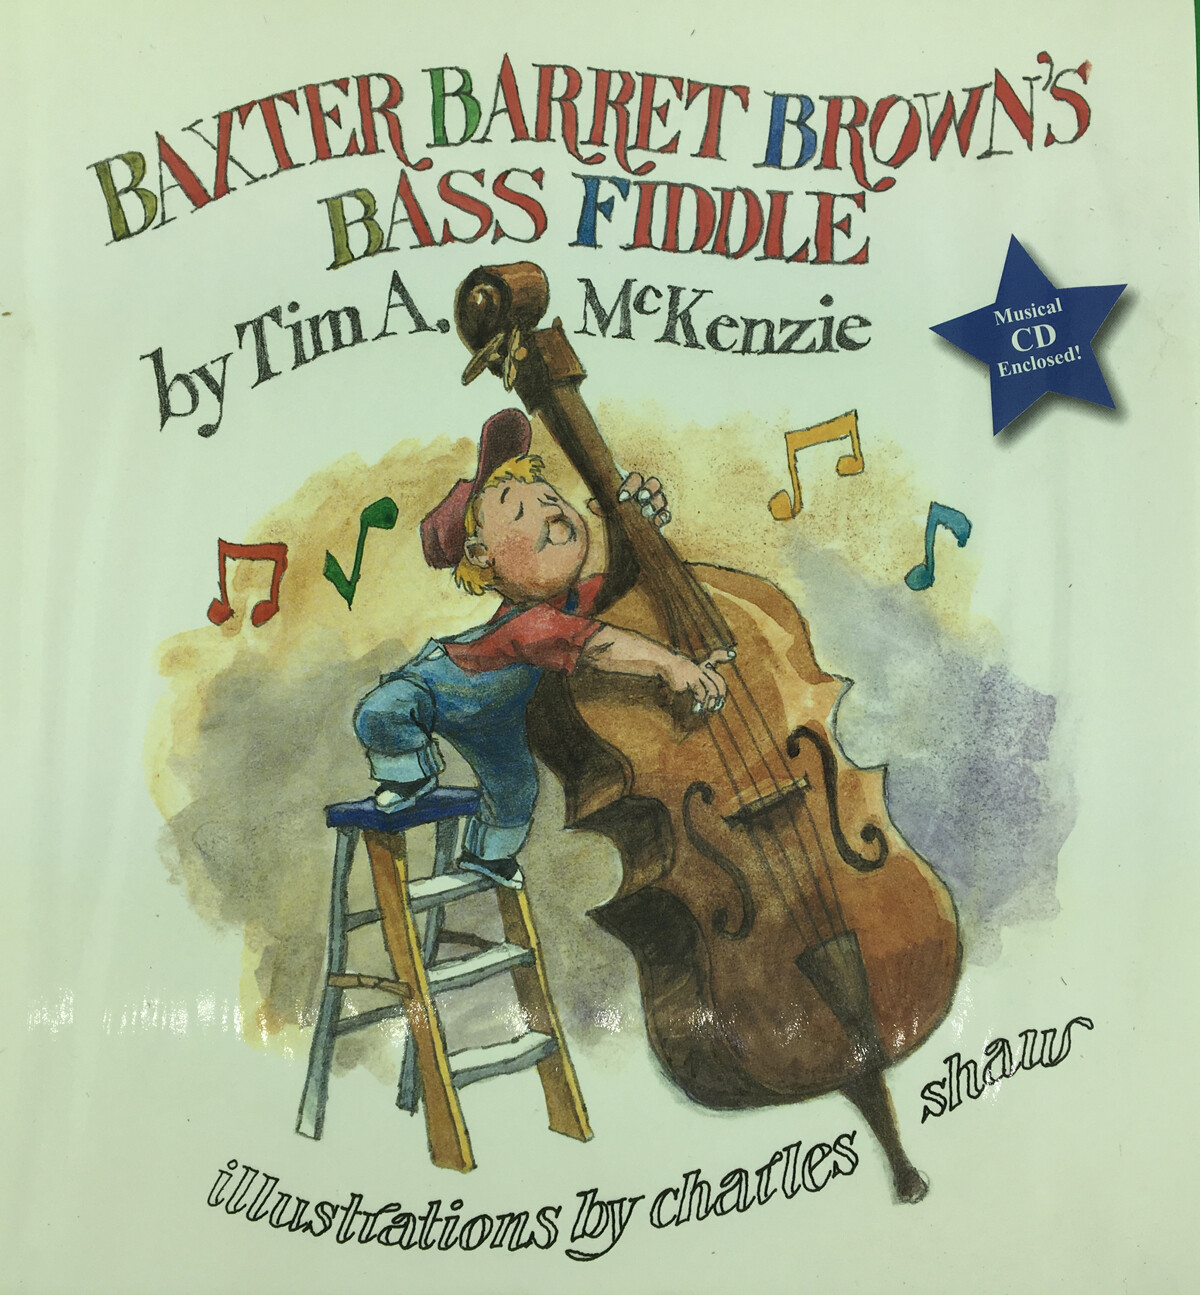 Baxter Barret Brown's Bass Fiddle